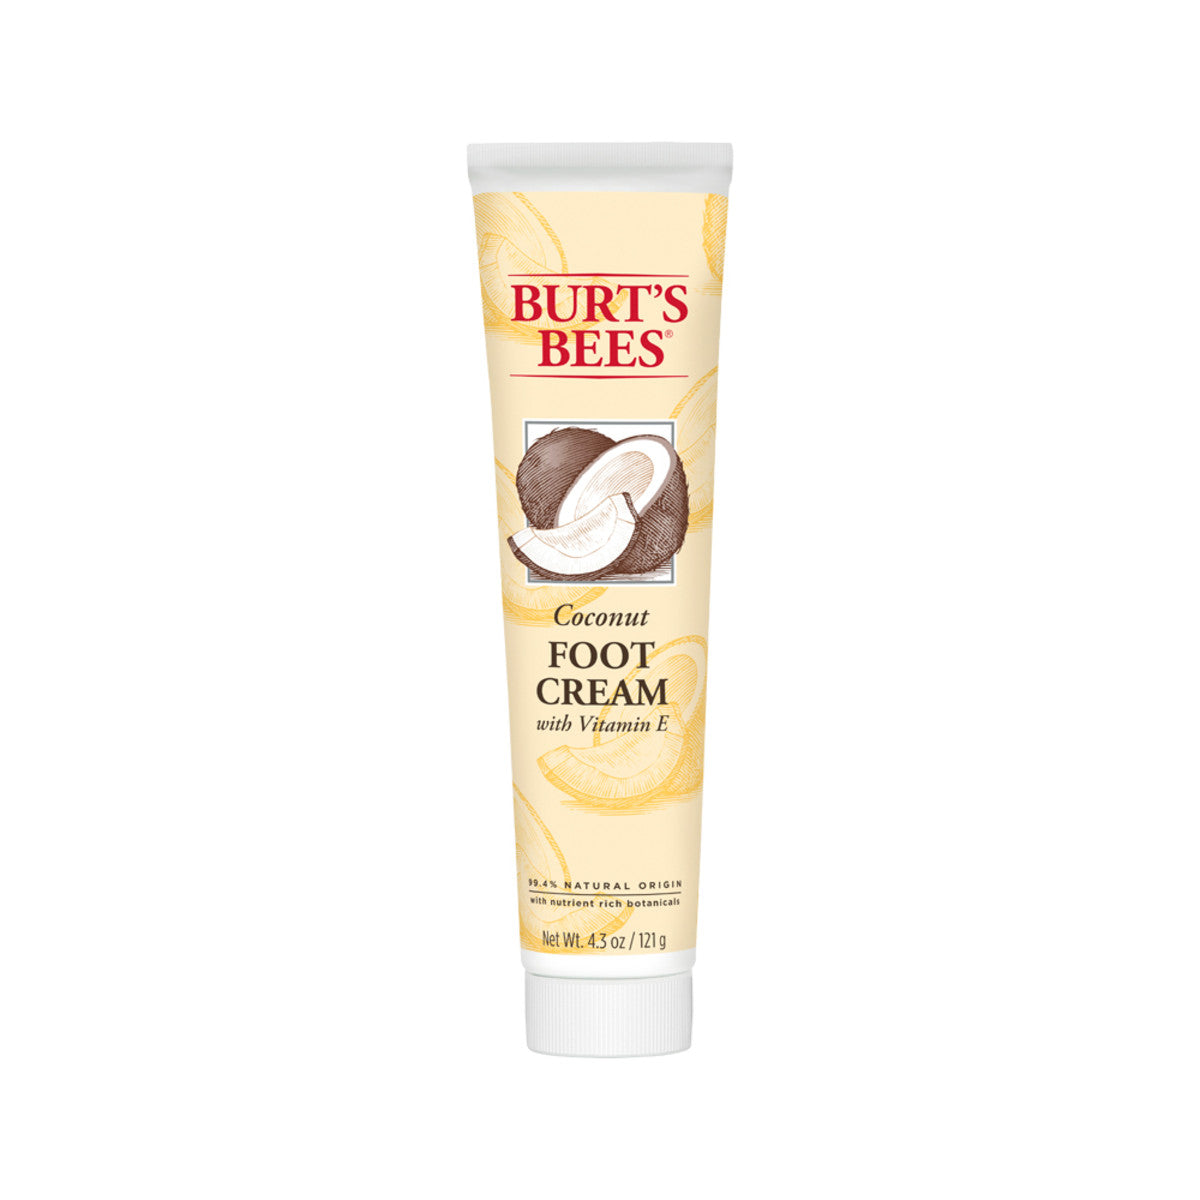 Burts Bees - Foot Cream Coconut